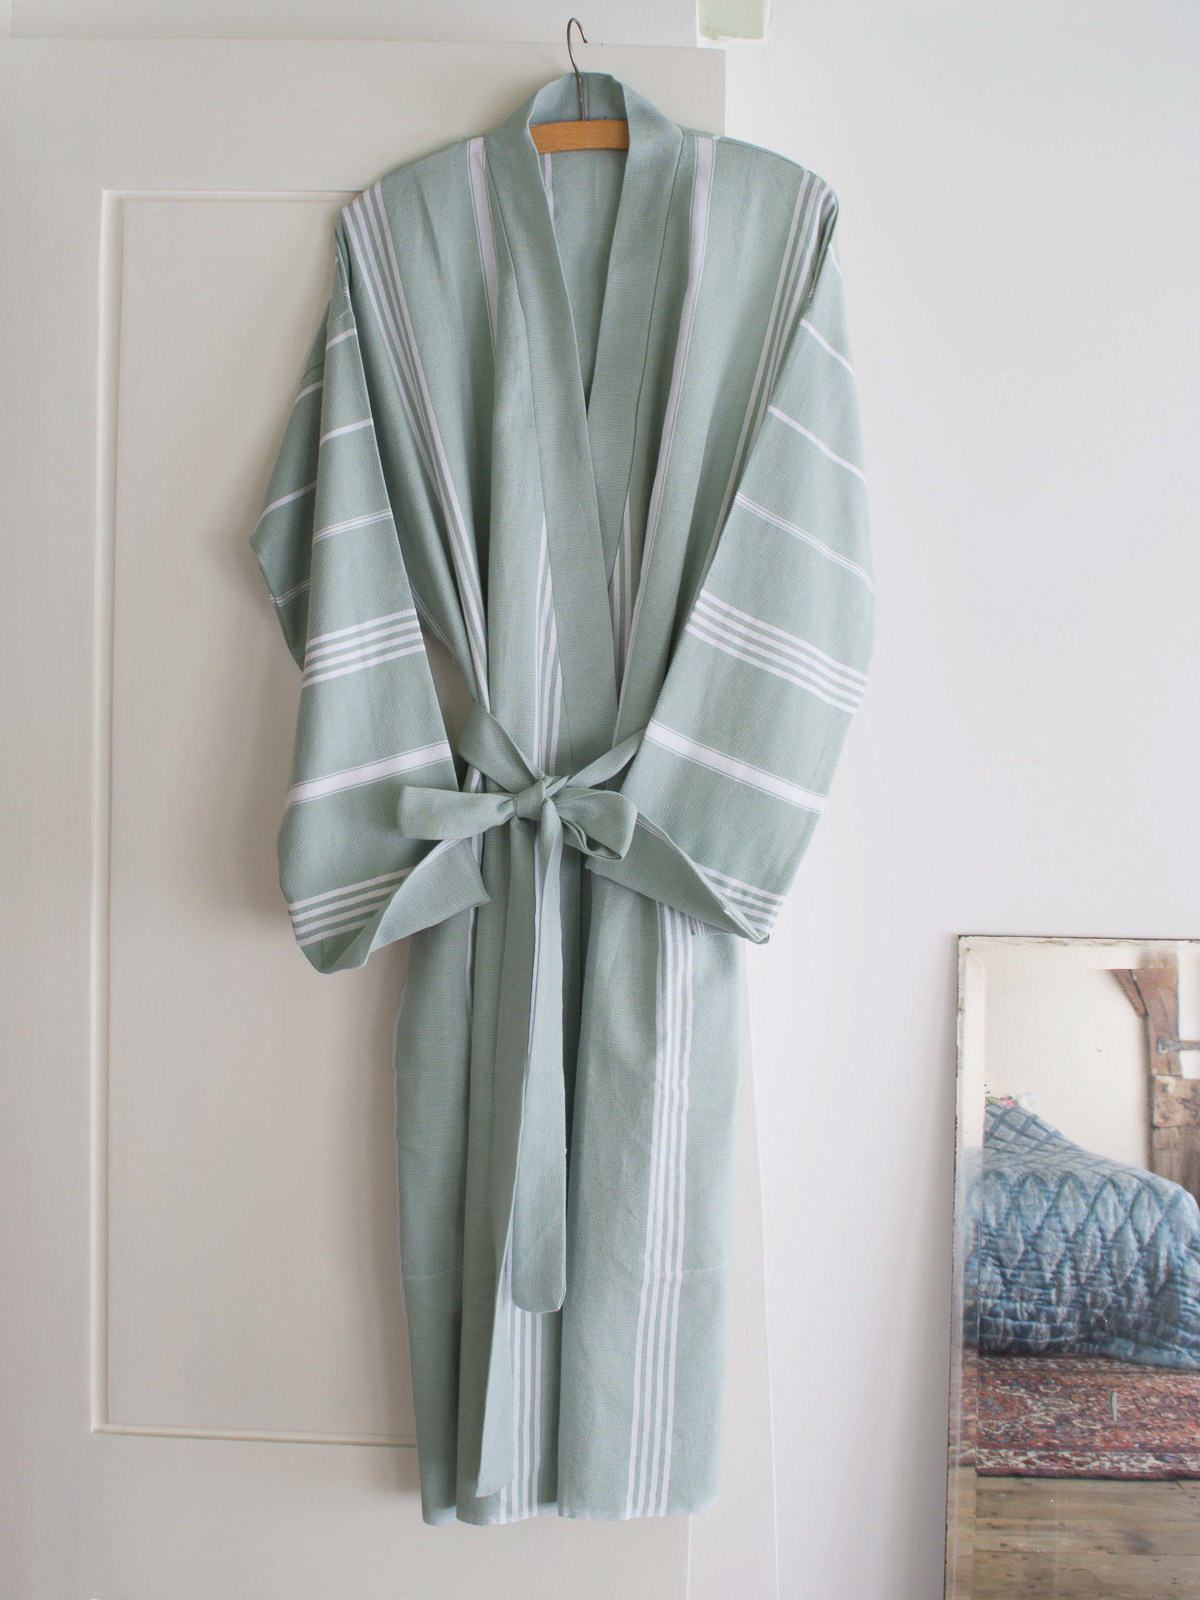 Ontwaken assistent bioscoop Dunne badjas kopen? Dit grijsgroene hamam model is een best seller -  Hamamdoeken.com